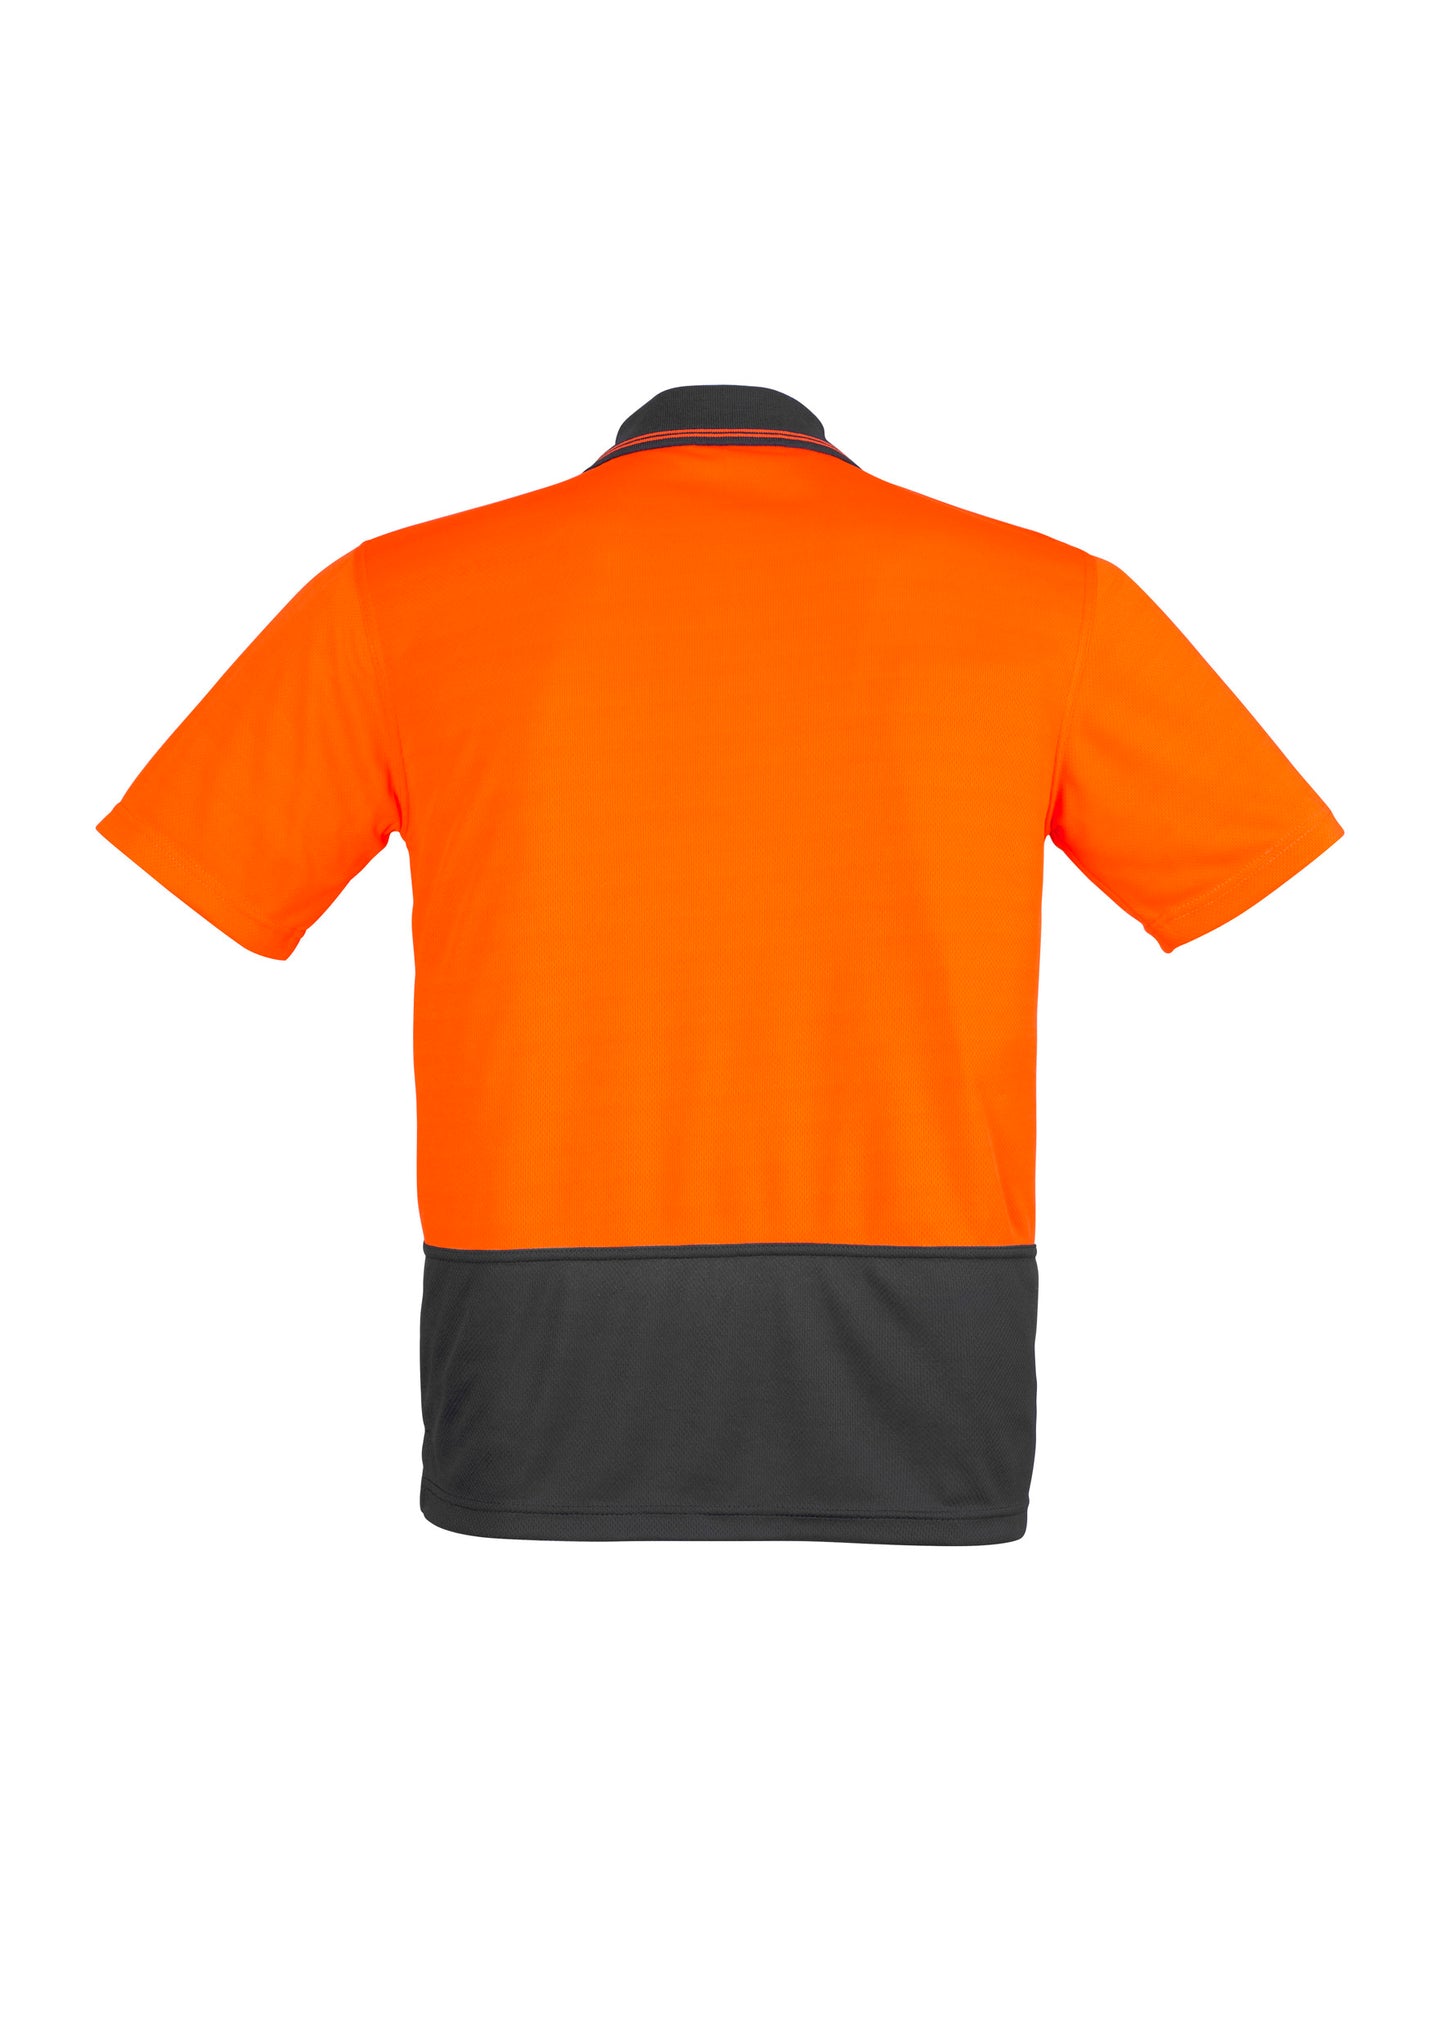 Unisex Hi Vis Basic Spliced Polo - Short Sleeve